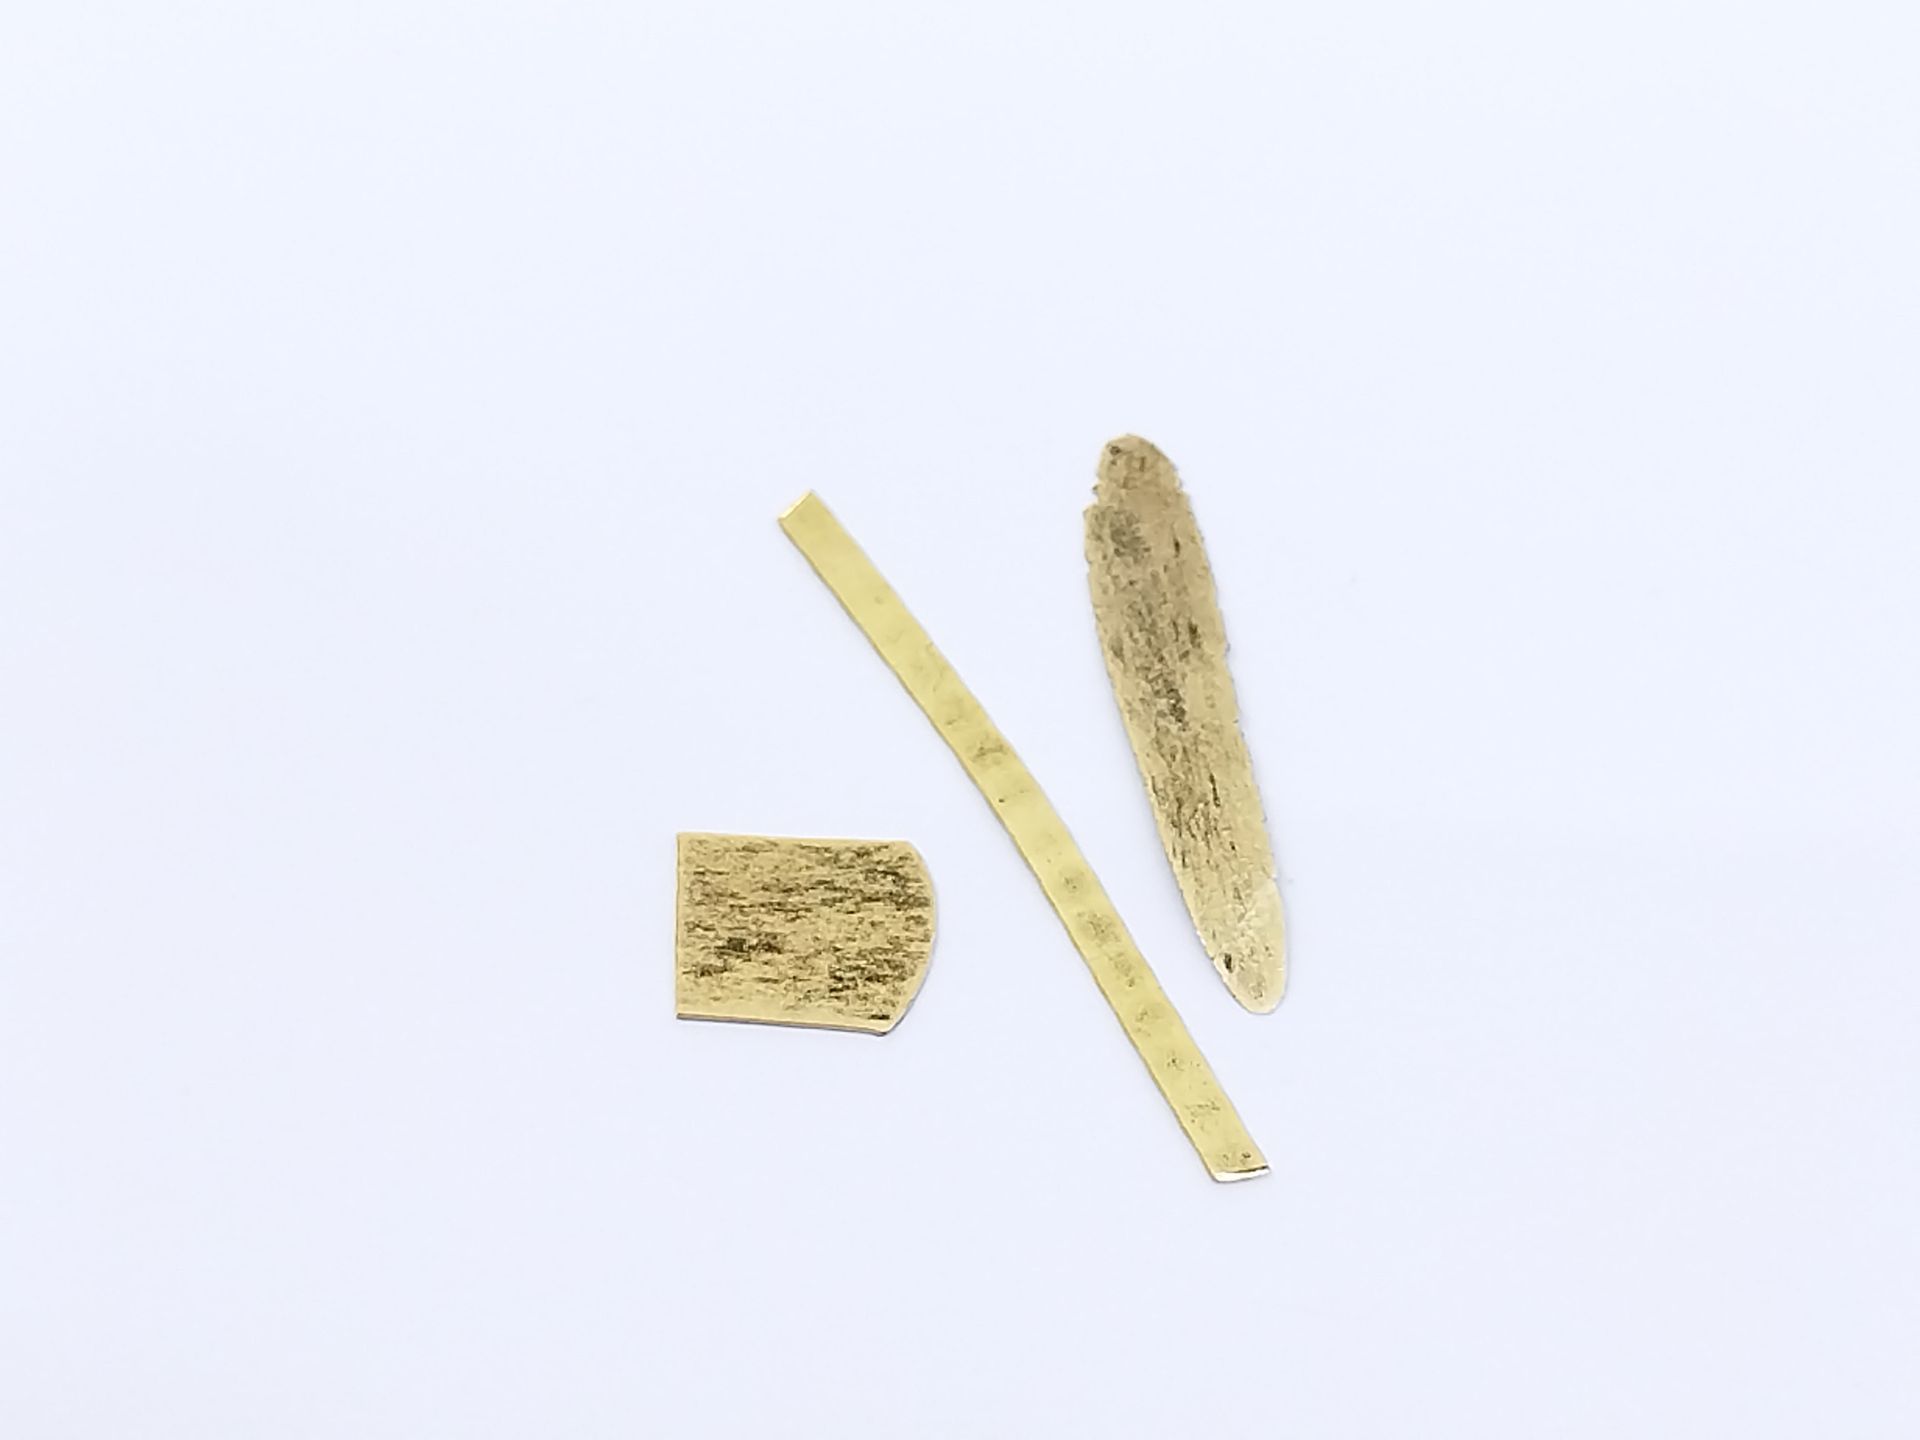 Null LOTE de restos de oro amarillo 750

peso : 1,2 g